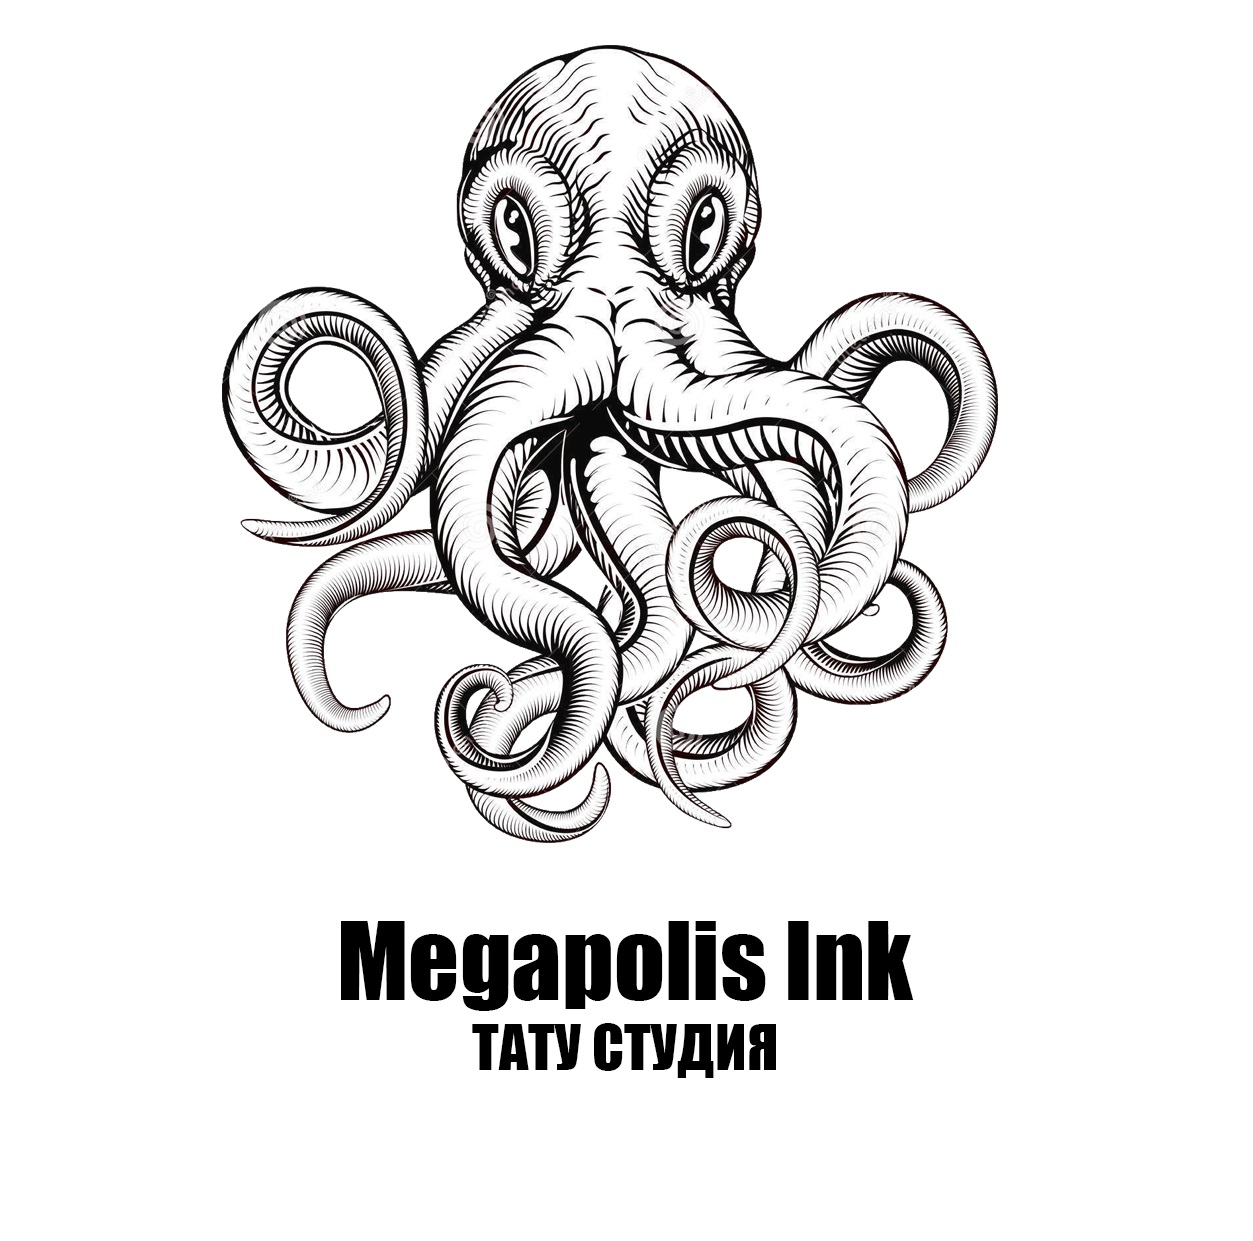 Профессиональная тату студия Megapolis Ink